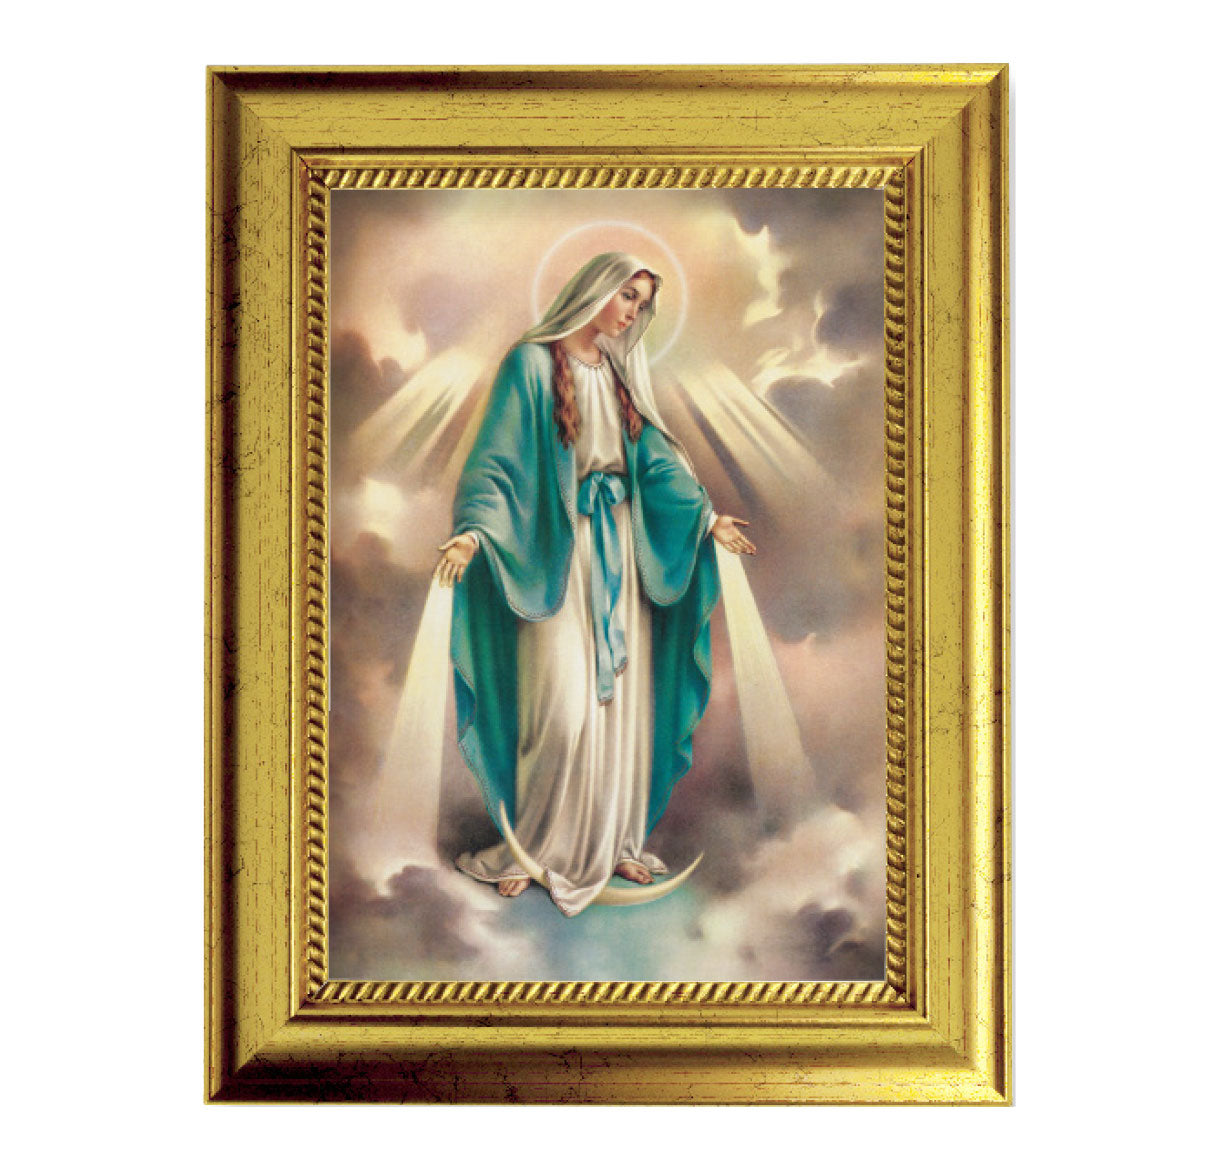 Our Lady of Grace Gold-Leaf Framed Art